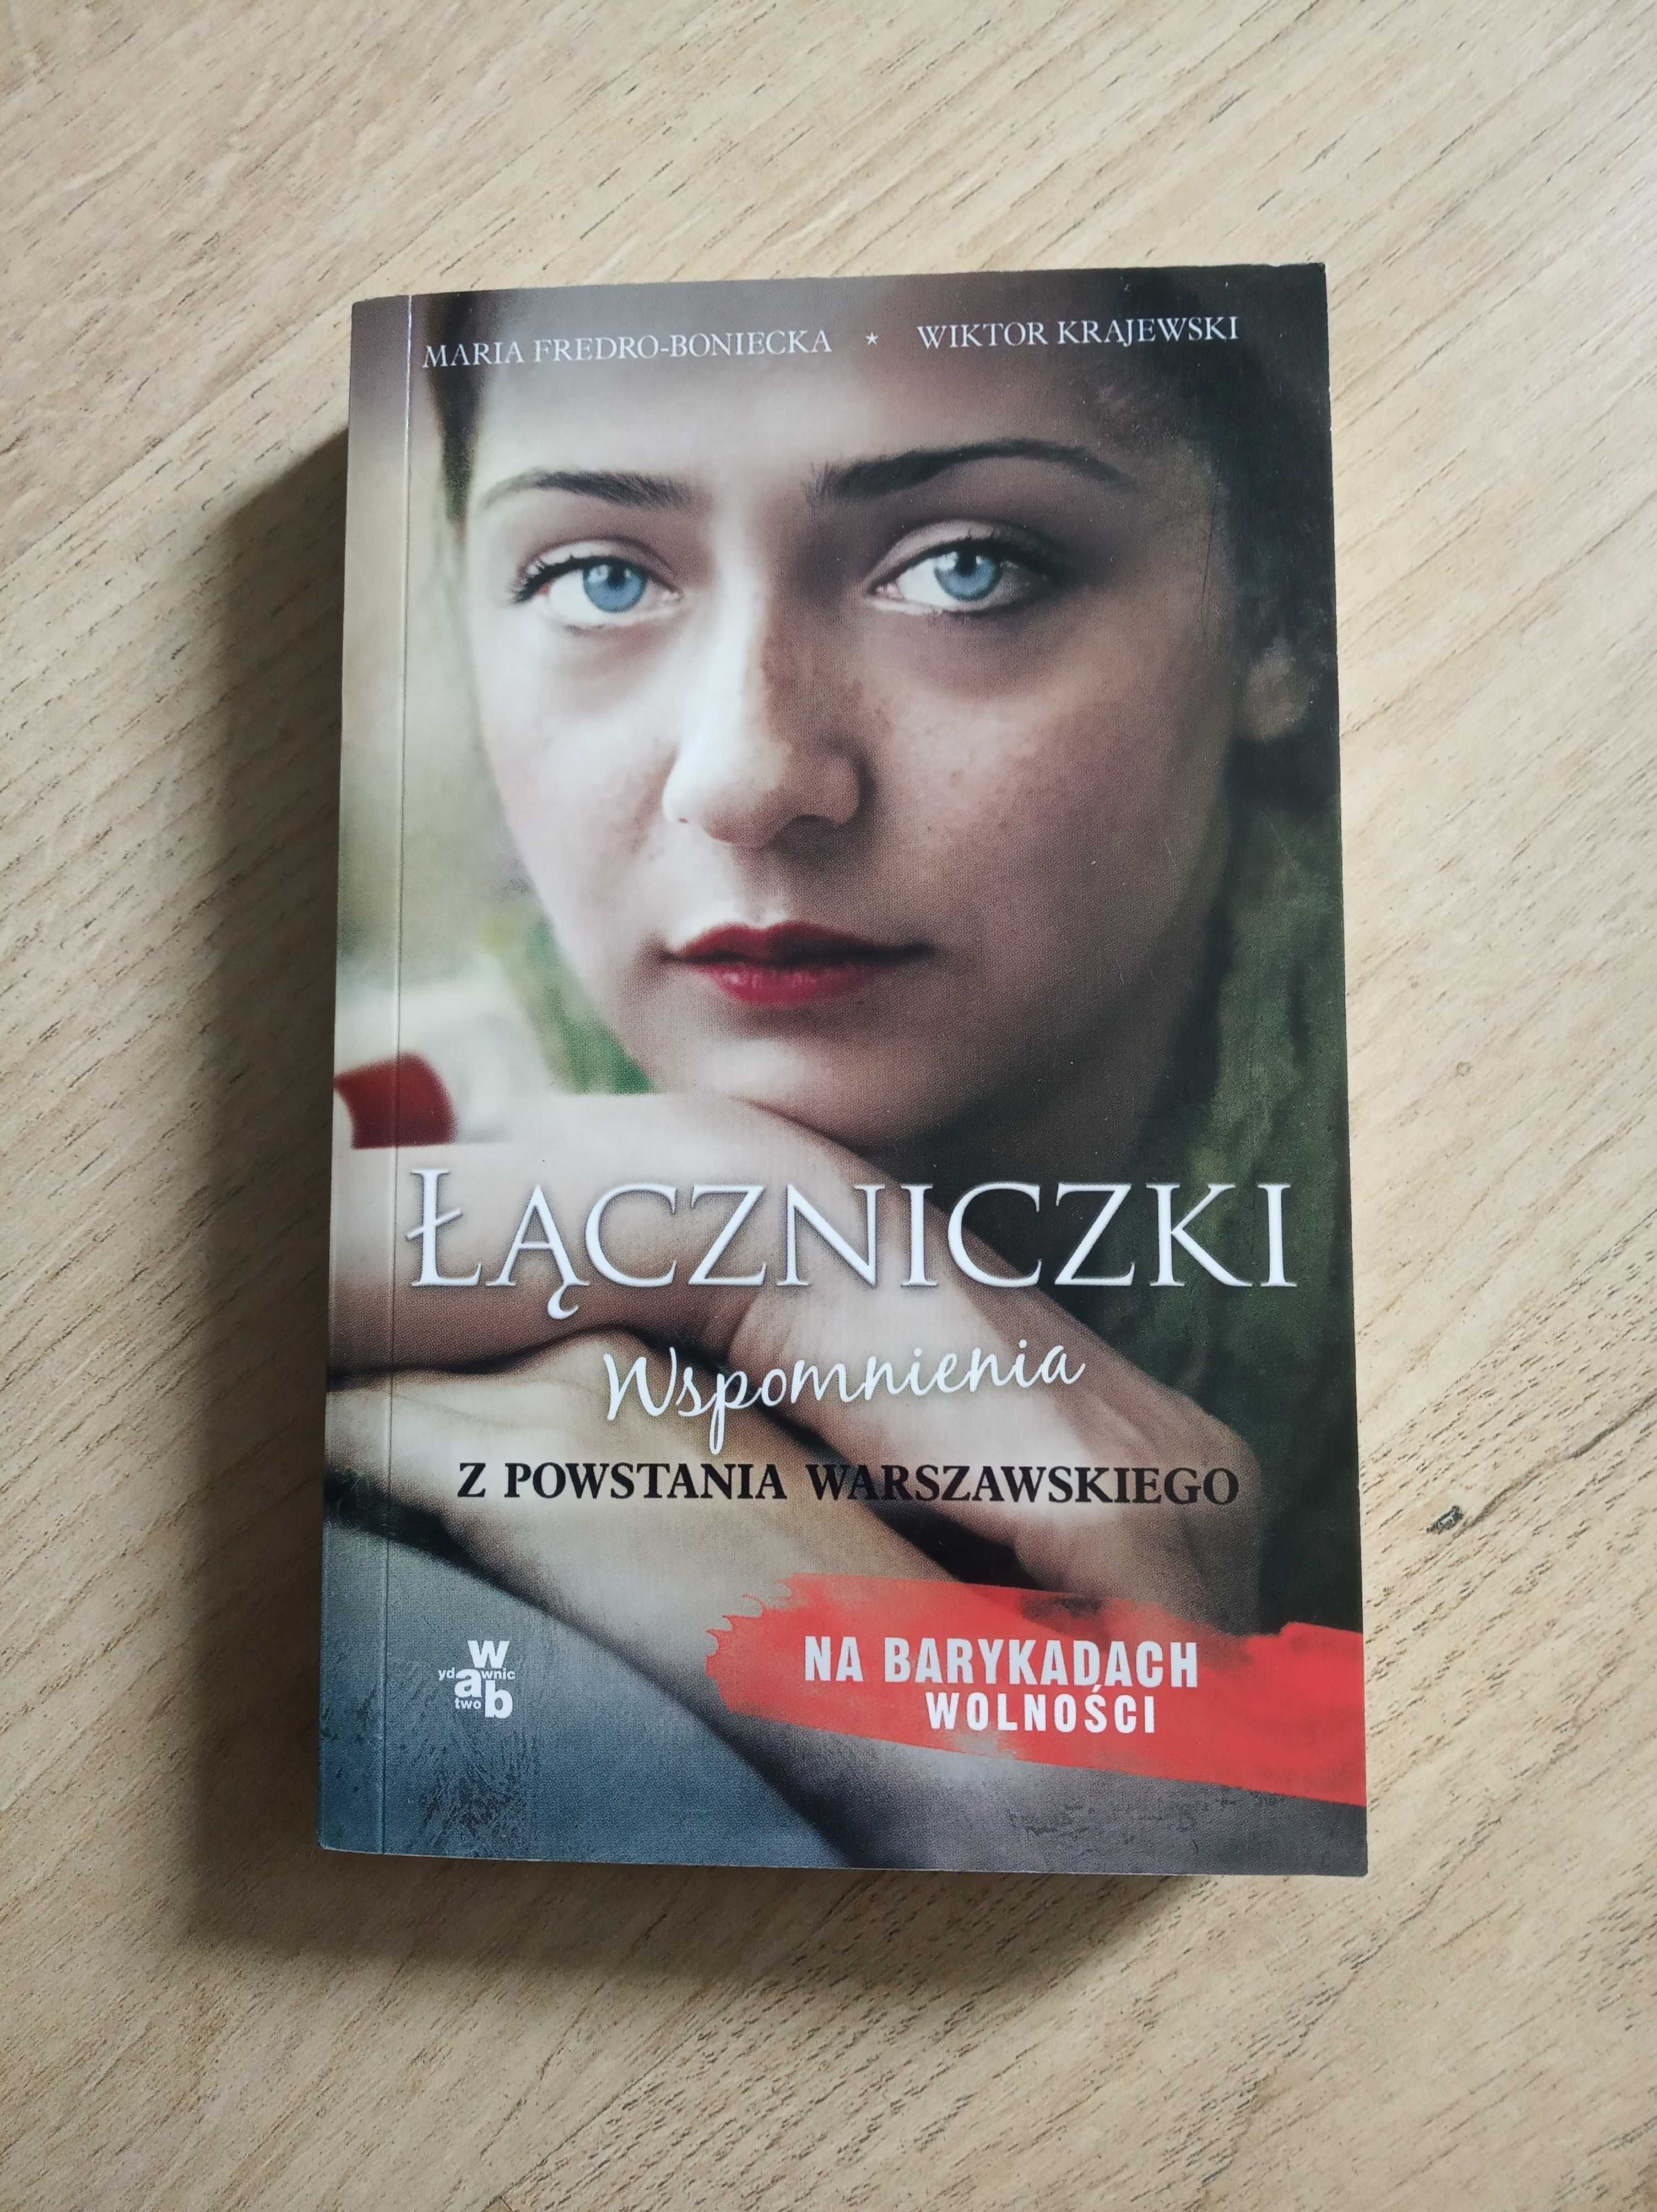 Książka - "Łączniczki" M. Fredro-Boniecka, W. Krajewski